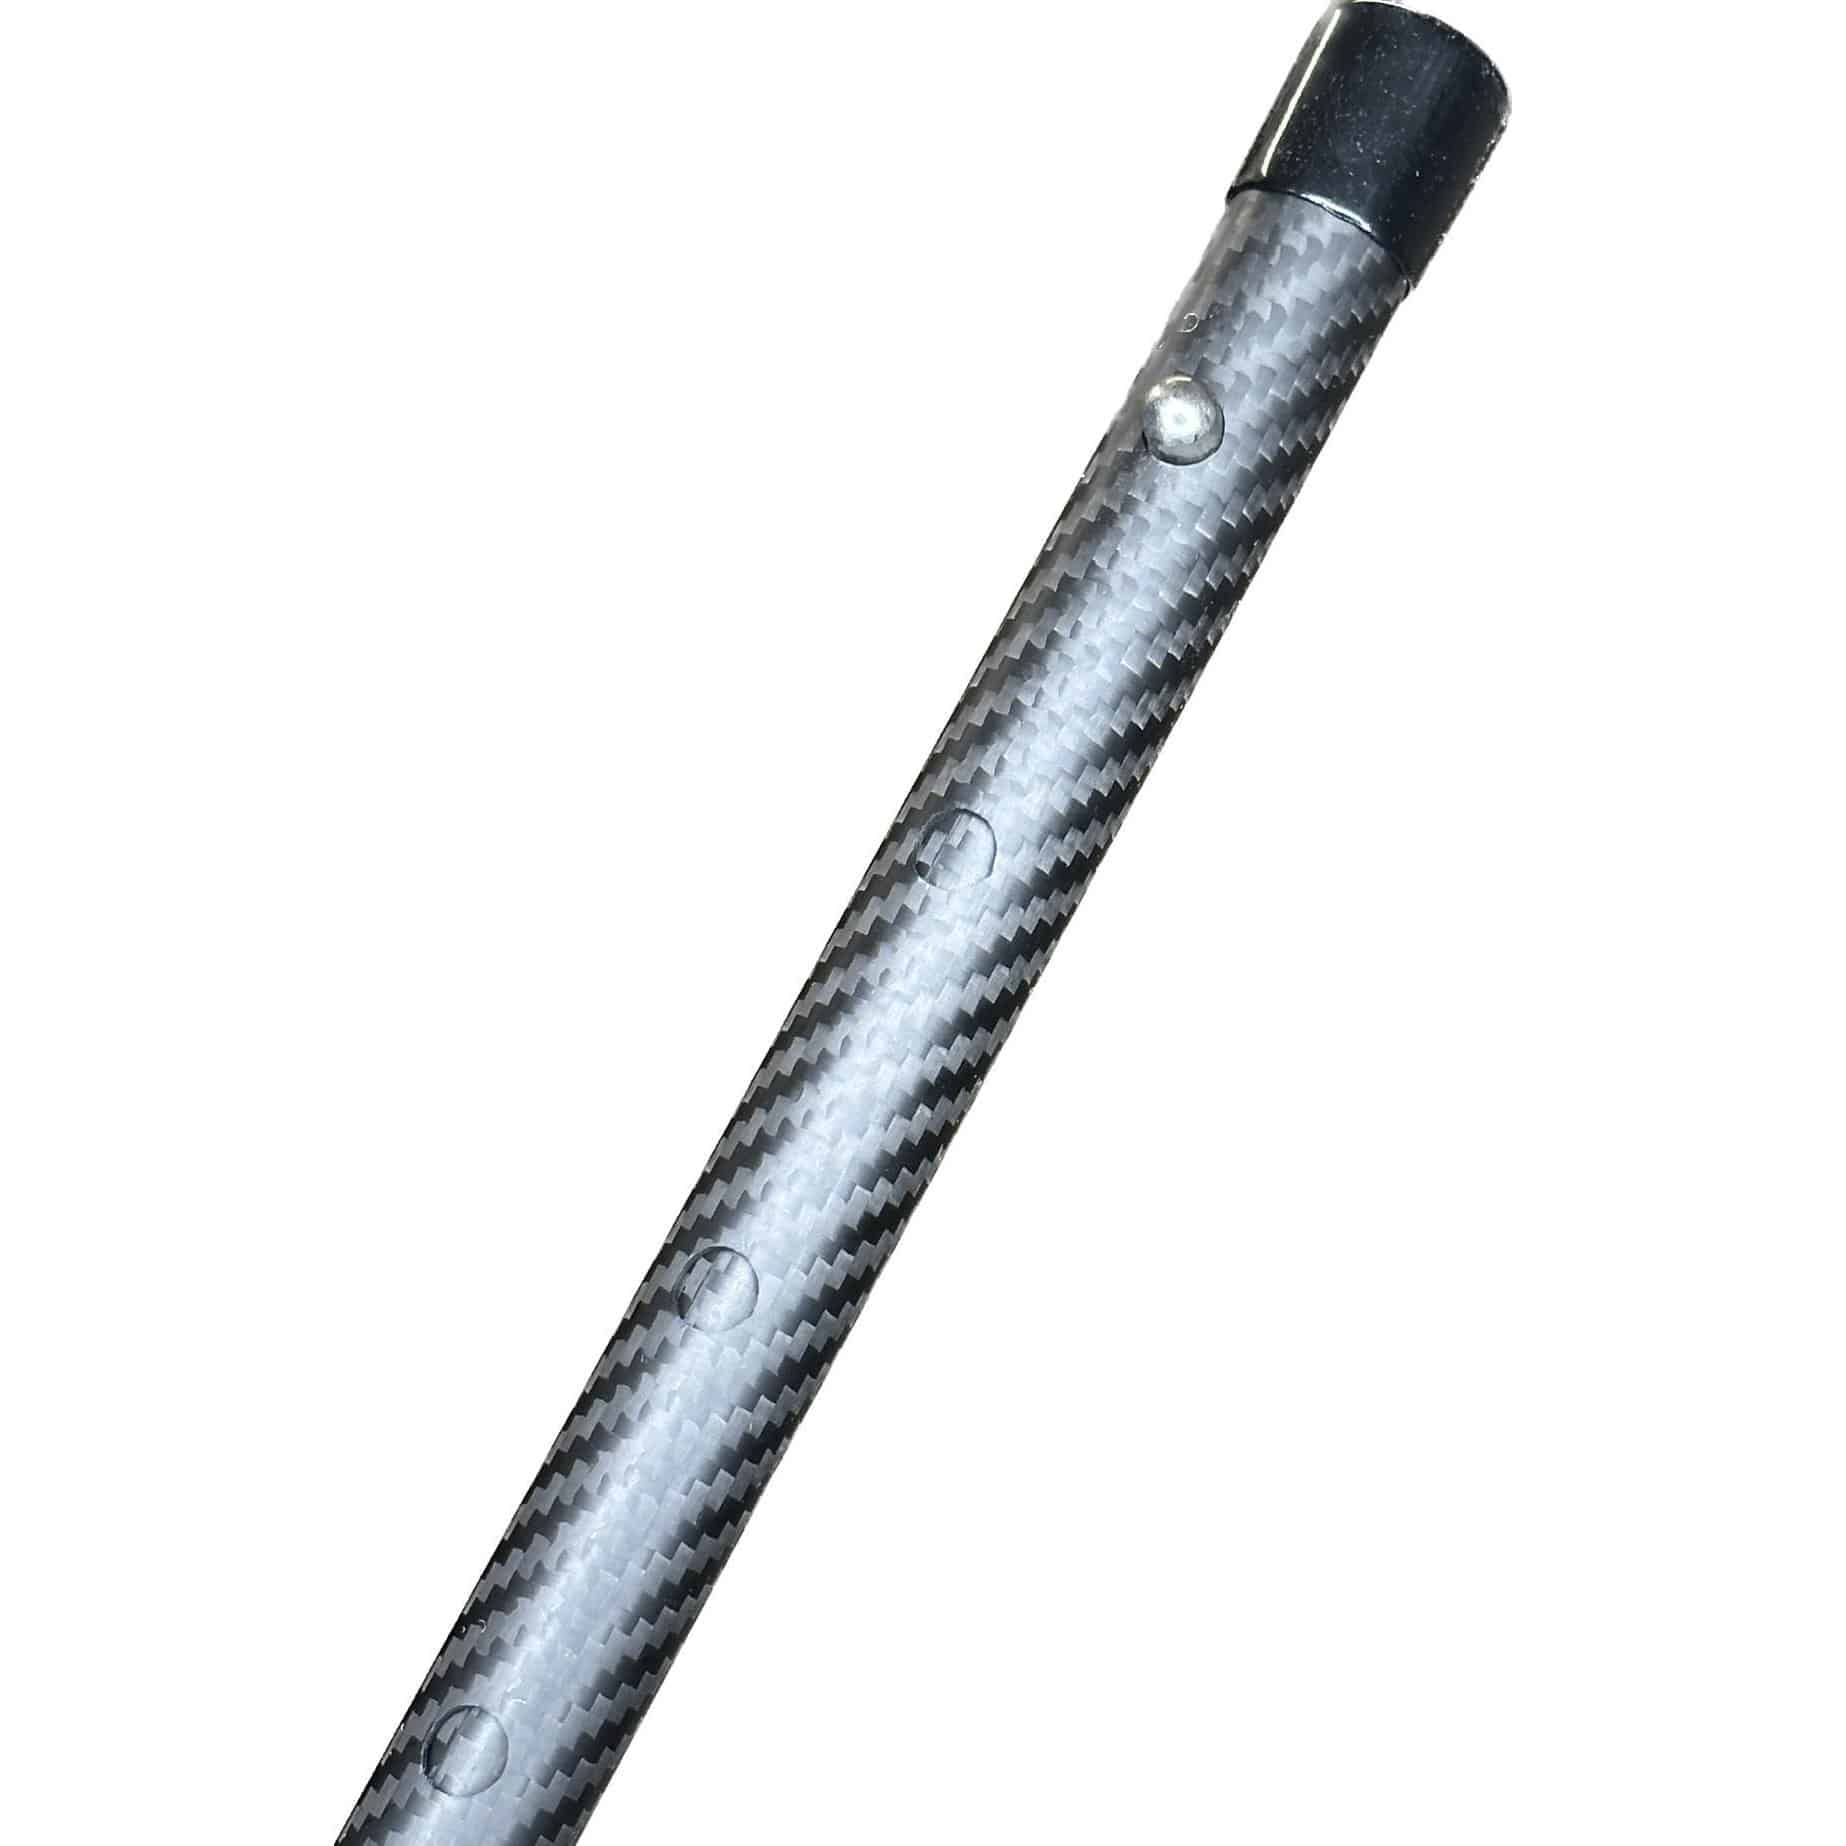 Carbon Pole 72 - LiteOutdoors